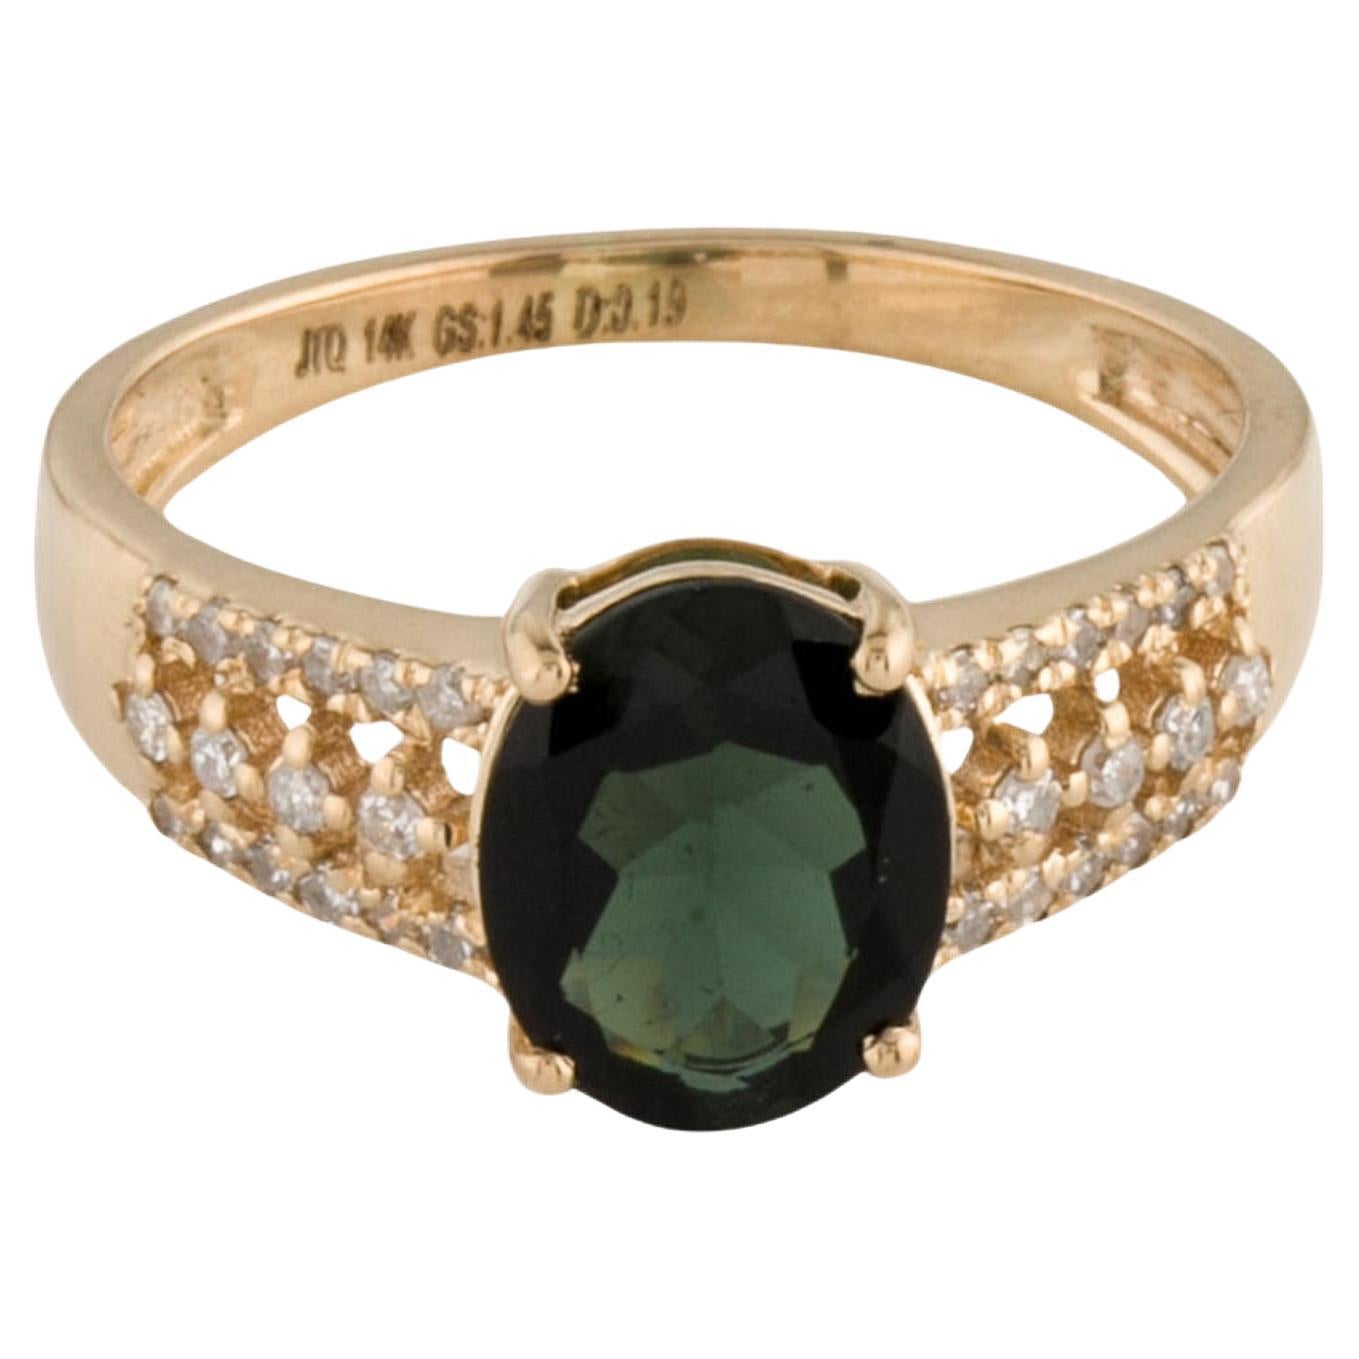 Elegant 14K Tourmaline & Diamond Cocktail Ring - Size 7 - Fine Gemstone Jewelry For Sale